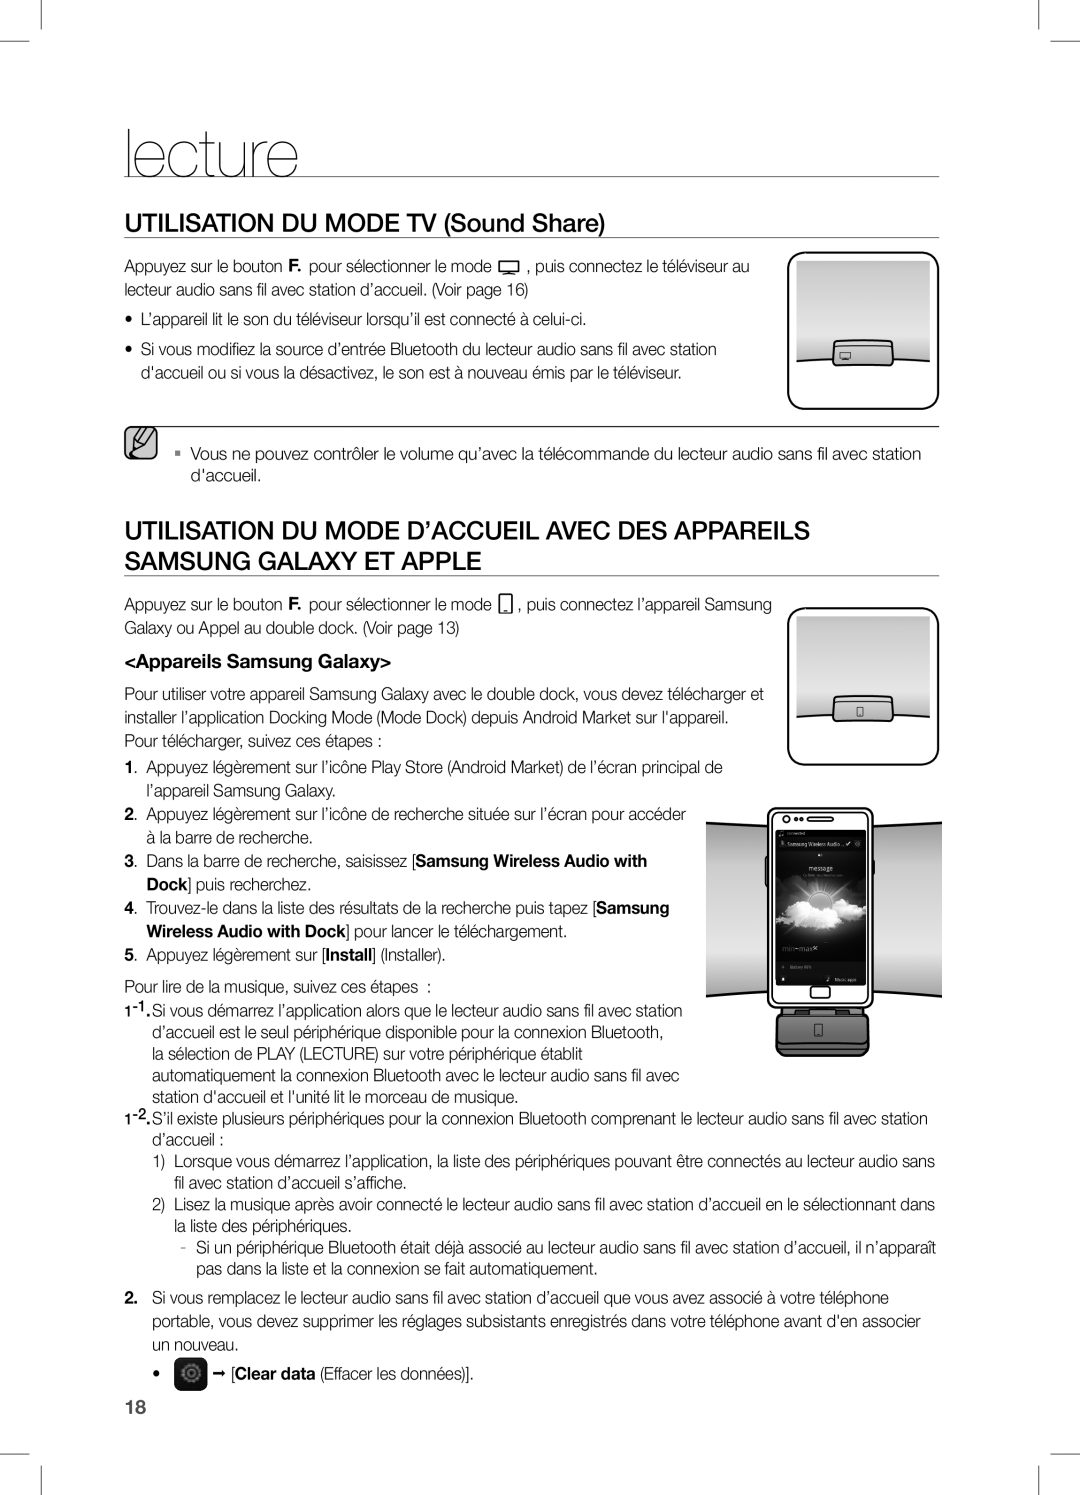 Samsung DA-E651/EN, DA-E650/EN, DA-E651/XN, DA-E650/ZF Lecture, Utilisation DU Mode TV Sound Share, Appareils Samsung Galaxy 